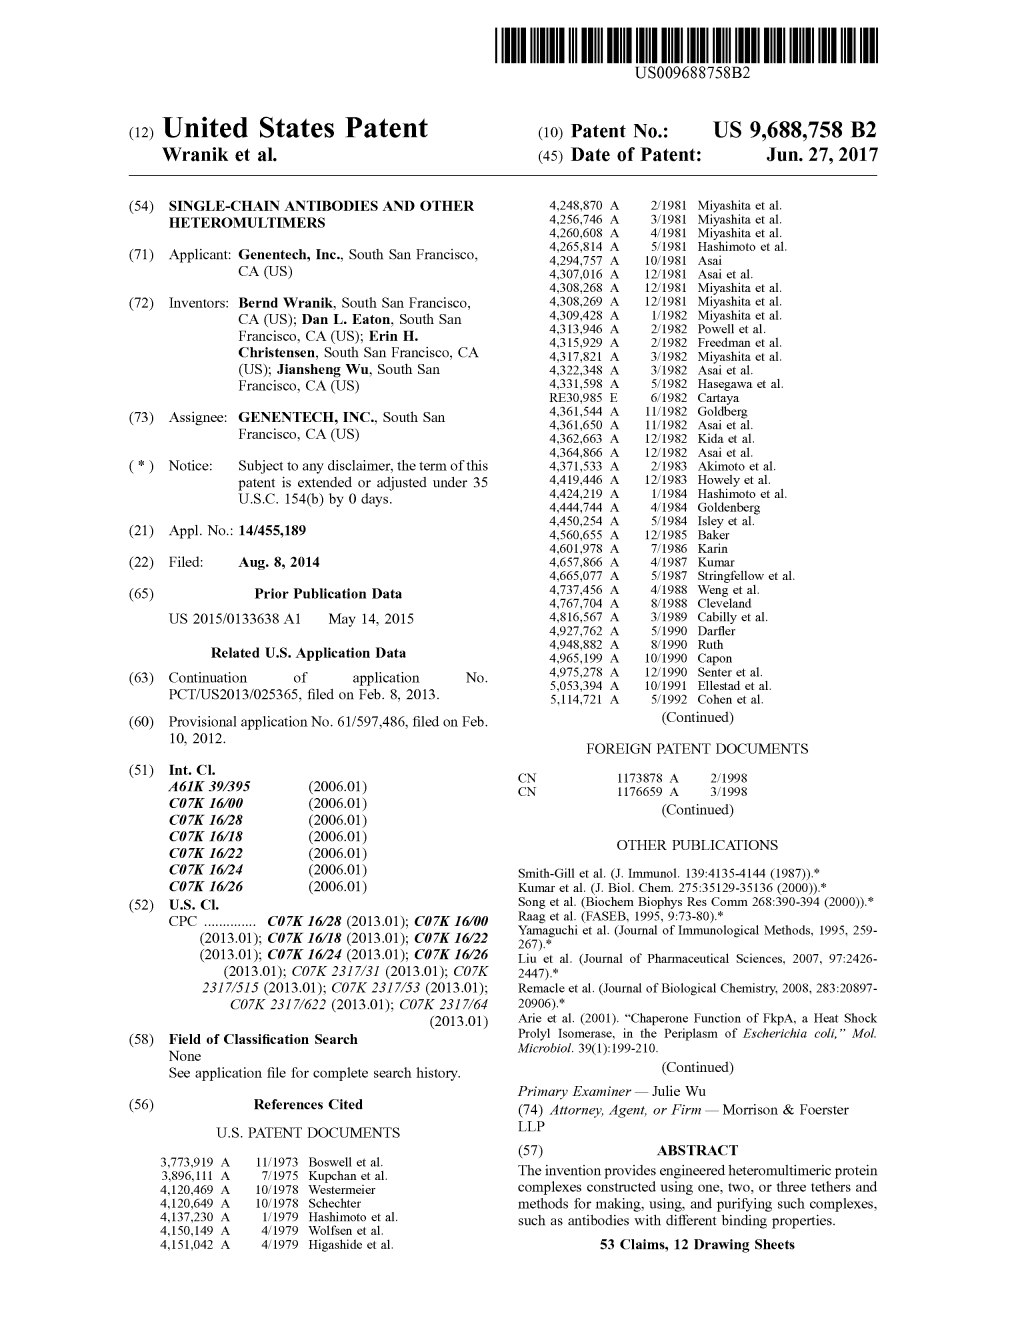 (12) United States Patent (10) Patent No.: US 9,688,758 B2 Wranik Et Al